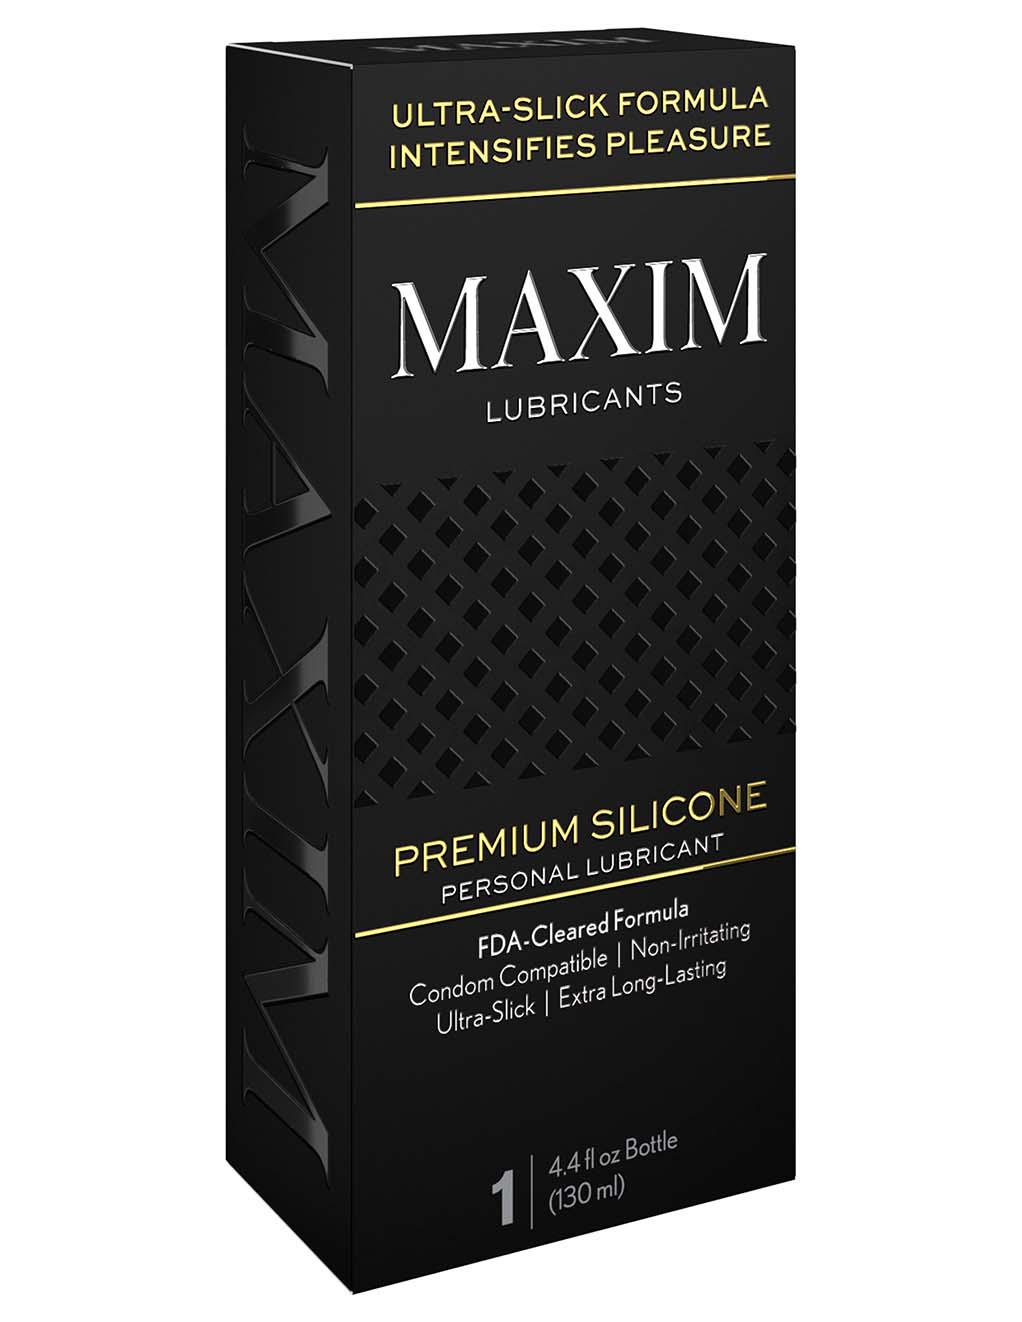 MAXIM Pure Silicone Lubricant- Box Side